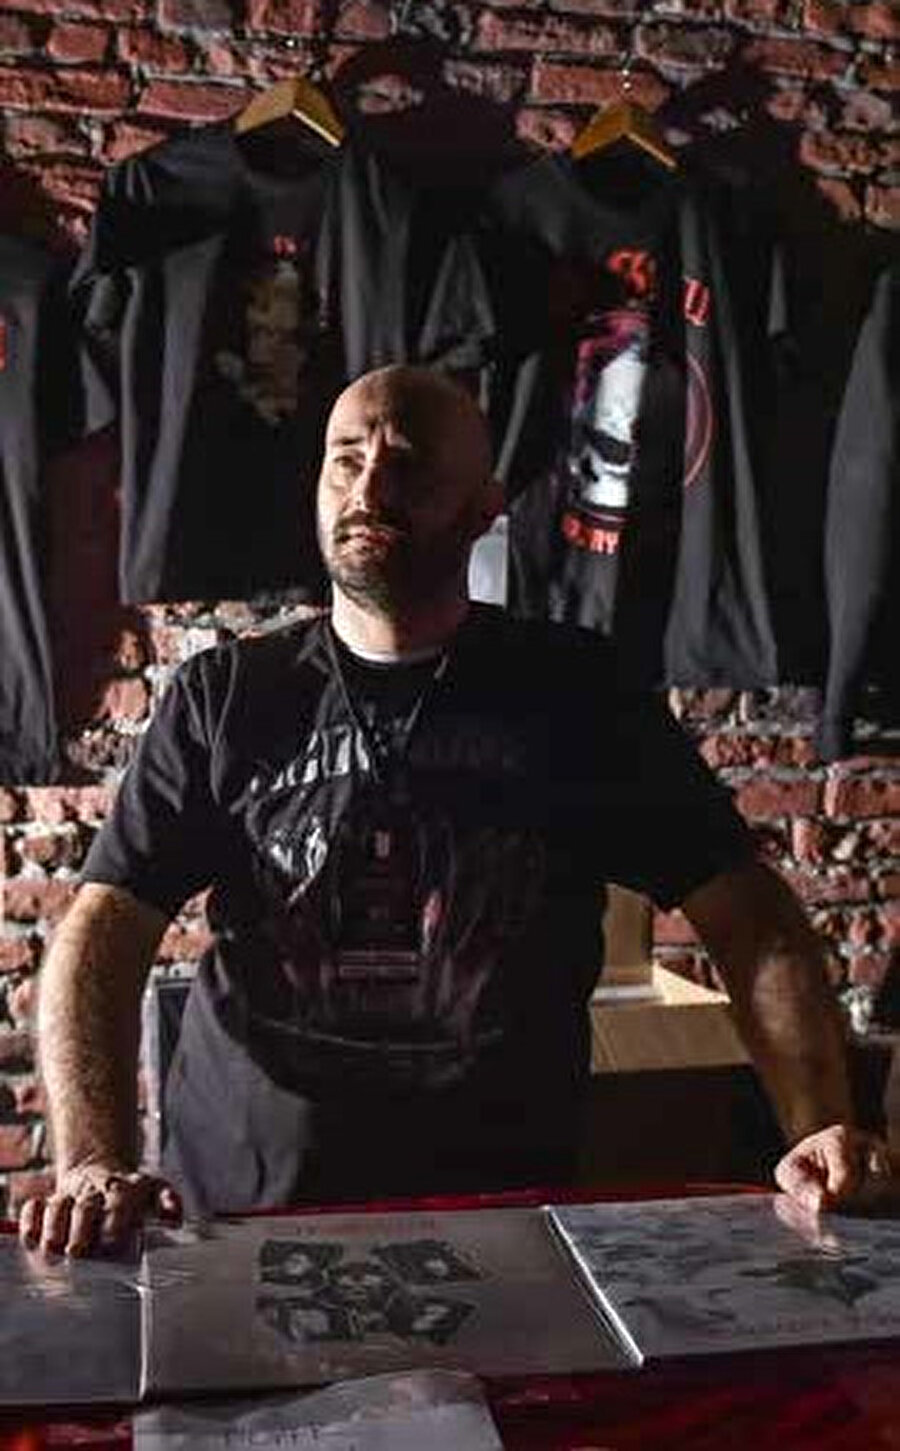 Haluk Ataklı, Hammer Müzik'in sahibi ve Türkiye'de metal müziğin gelişmesinde katkısı olan kişidir.